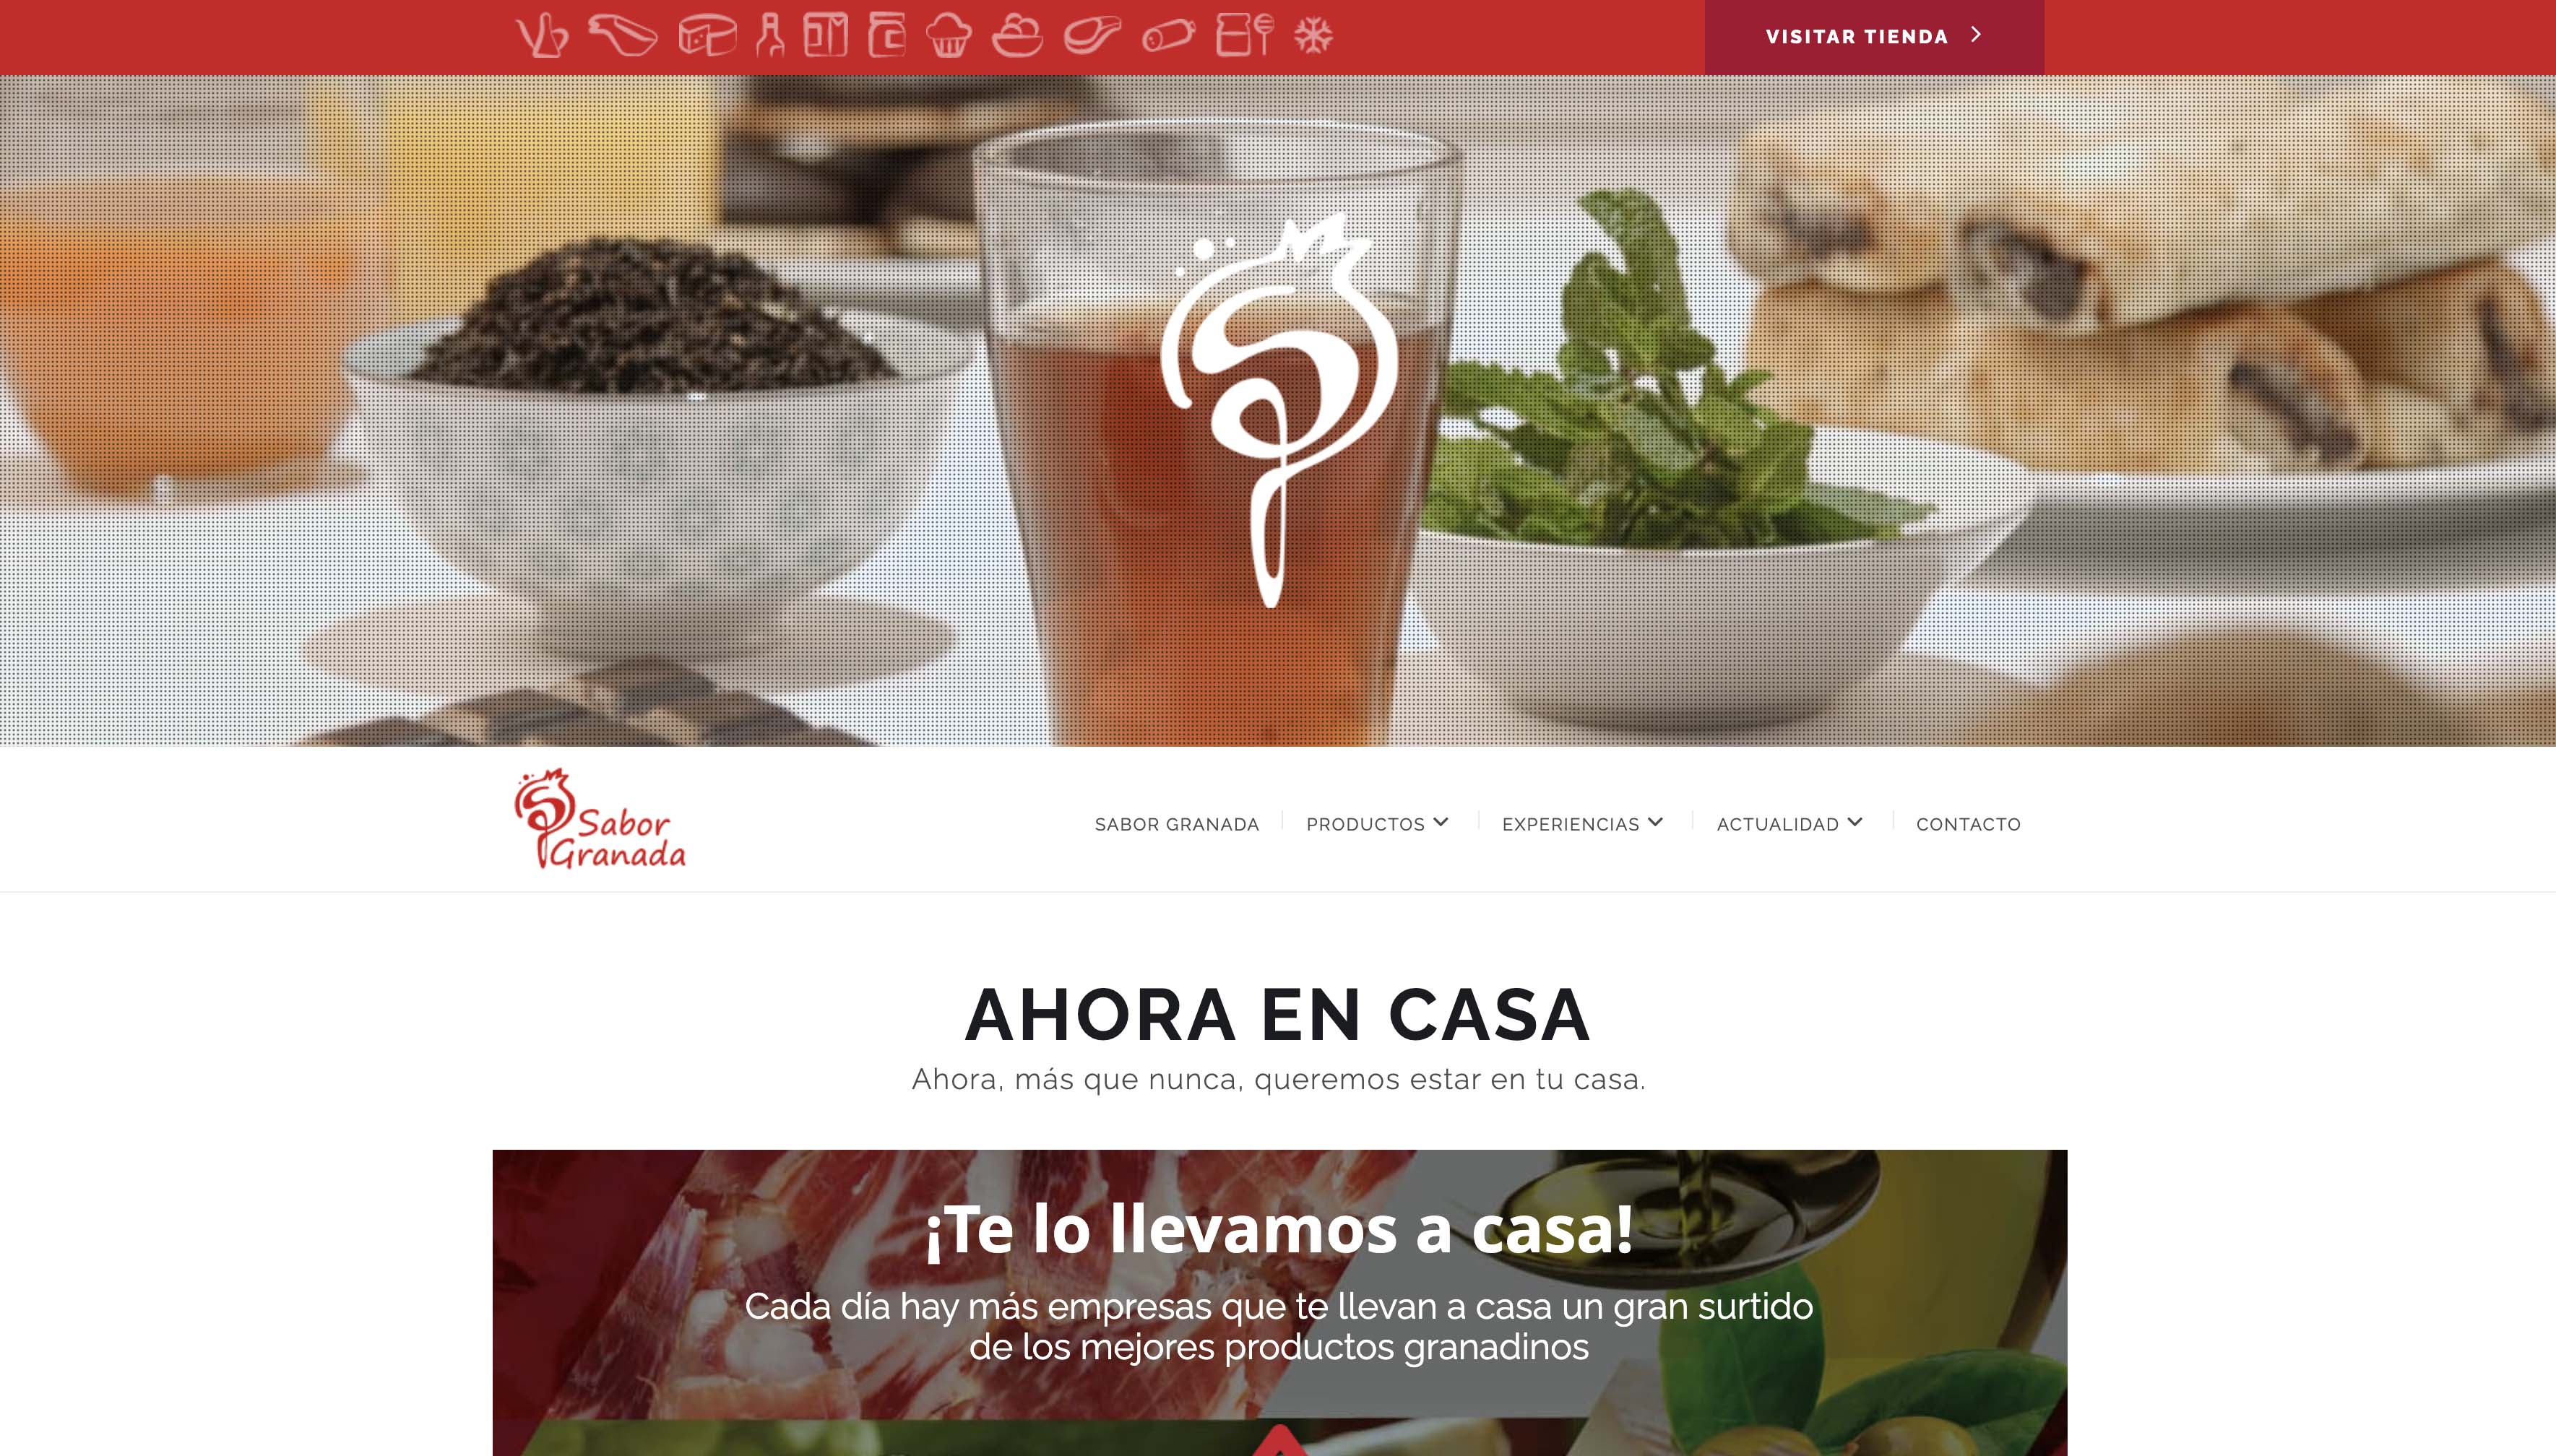 Sabor Granada permite la incorporación de empresas de manera online y crea un etiquetado inteligente para sus productos